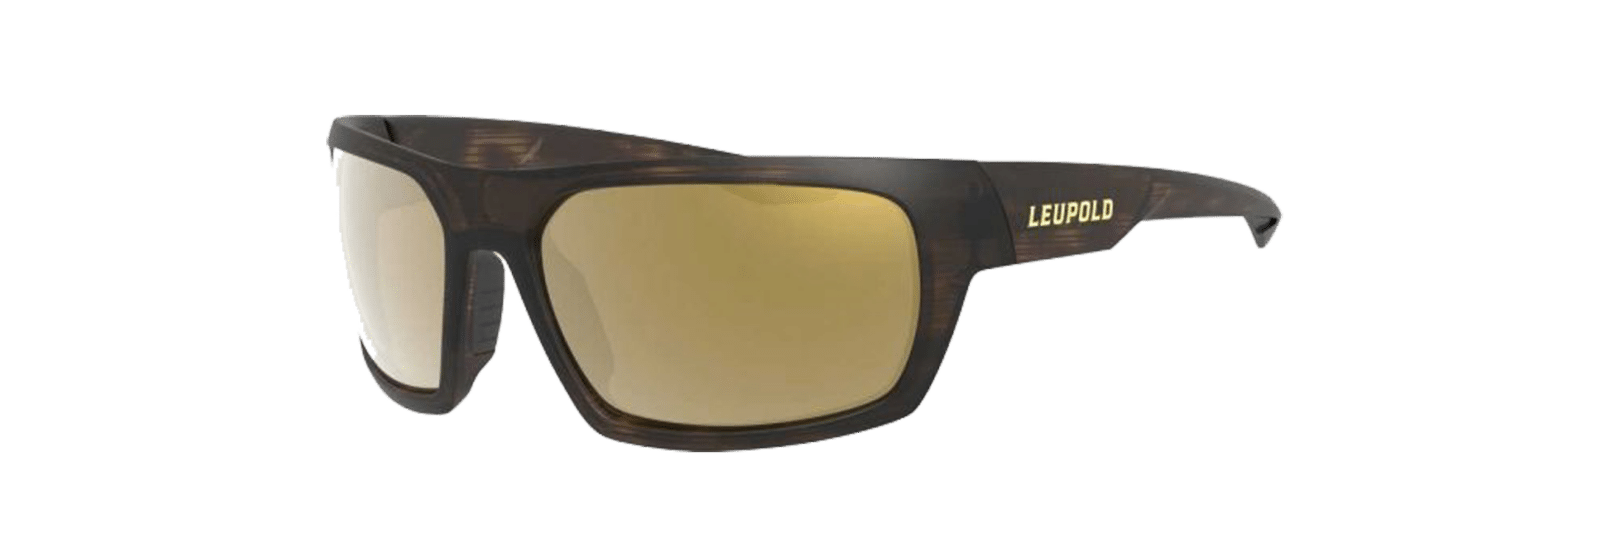 Leupold Packout Performance Eyewear